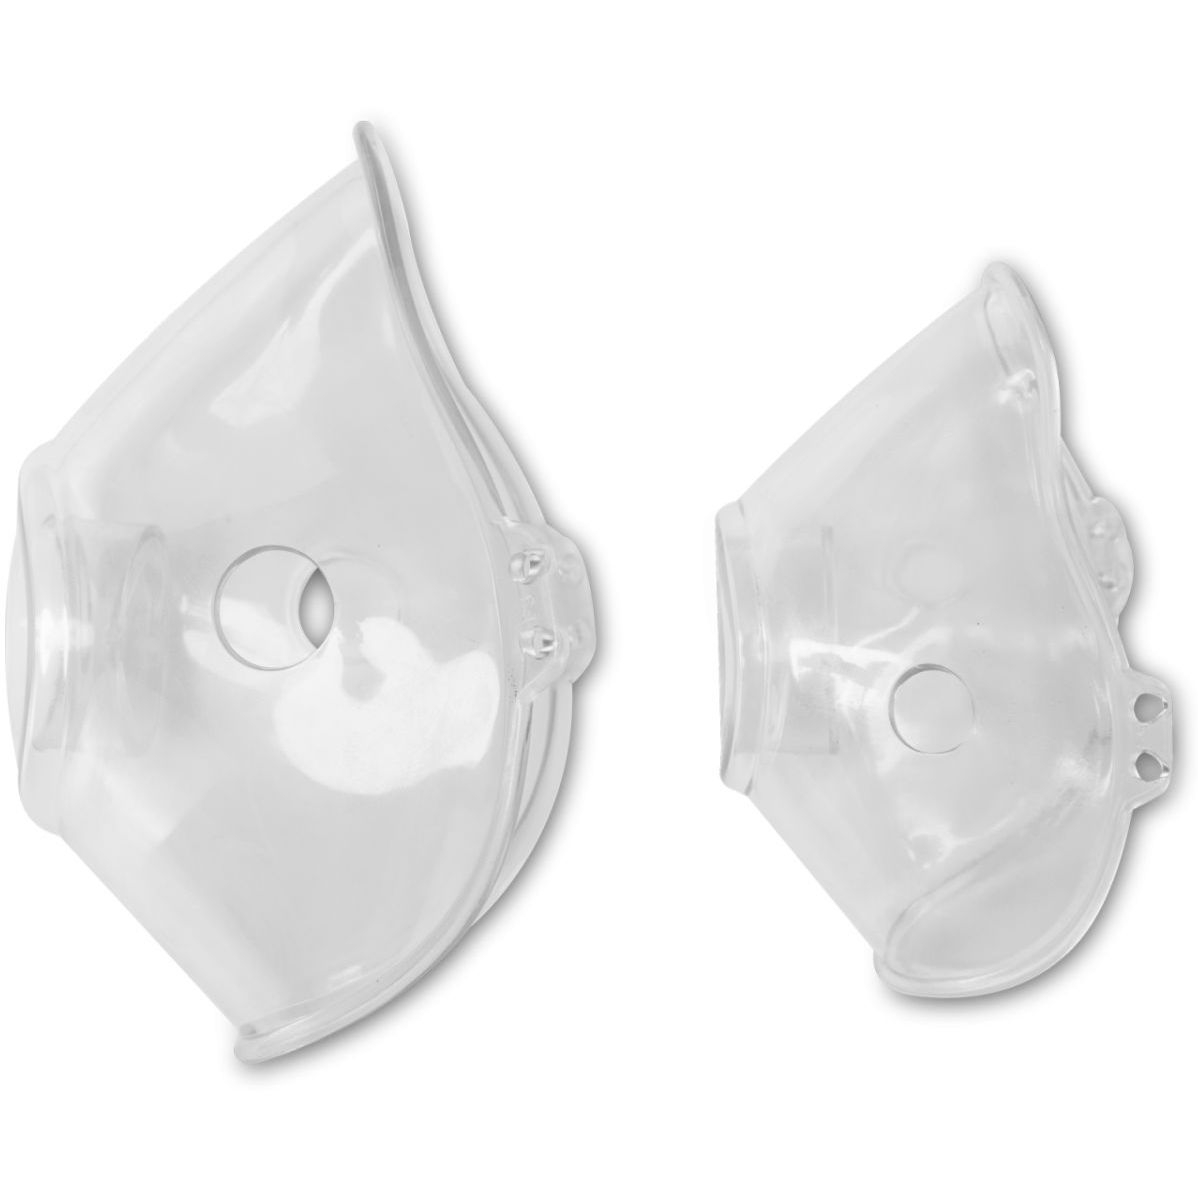 Ультразвуковой небулайзер Lionelo Nebi Air Mask, белый (LO-NEBI AIR MASK) - фото 4